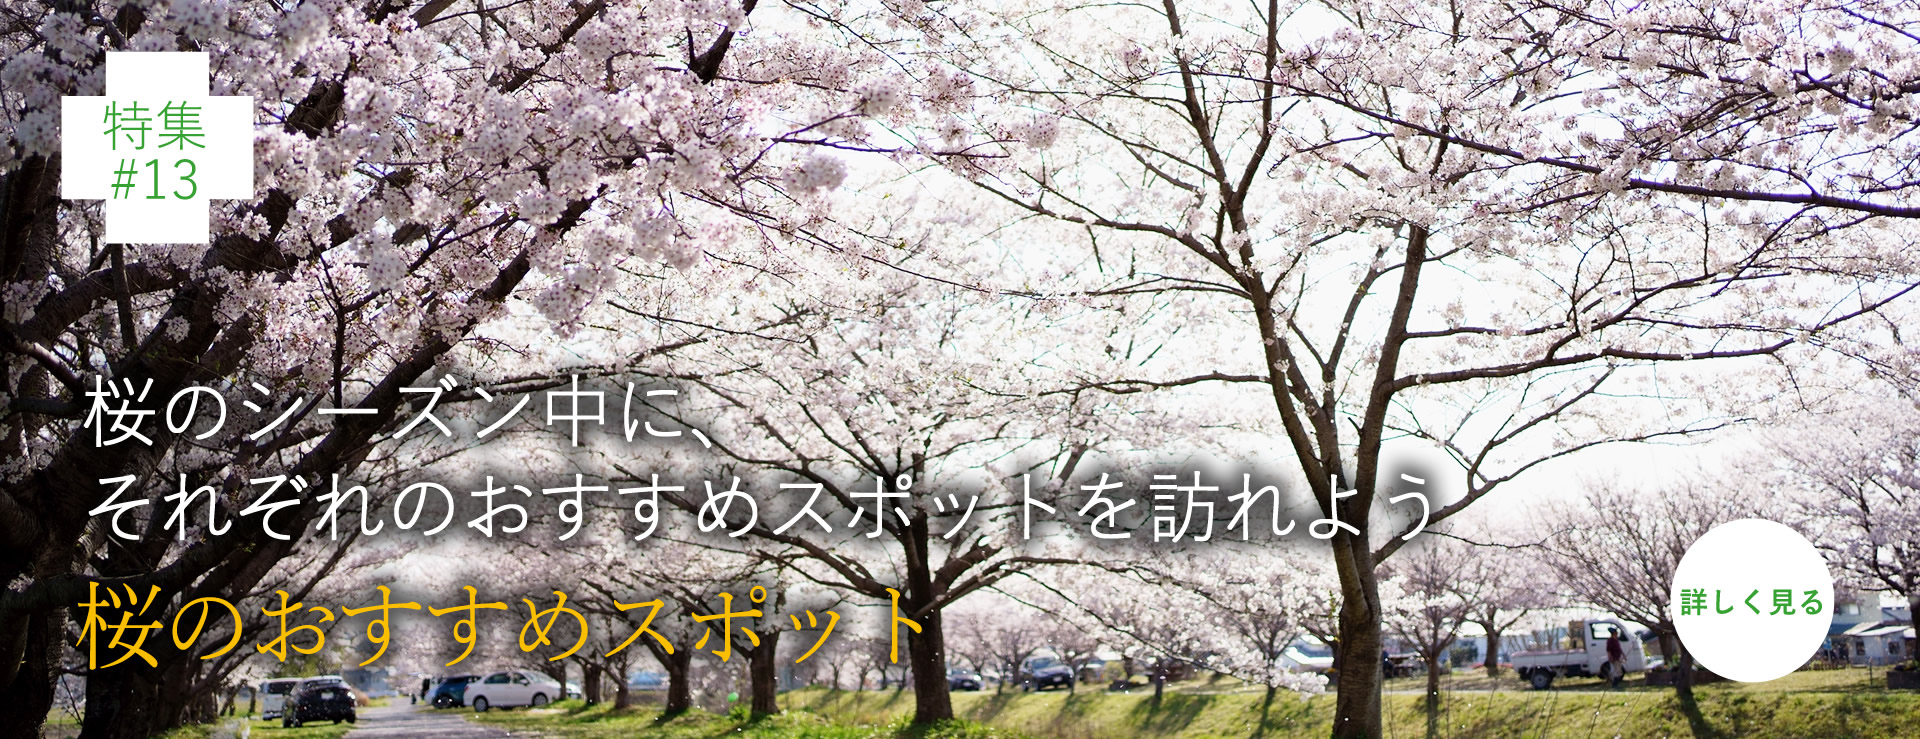 桜のシーズン中に、それぞれのおすすめスポットを訪れよう 桜のおすすめスポット